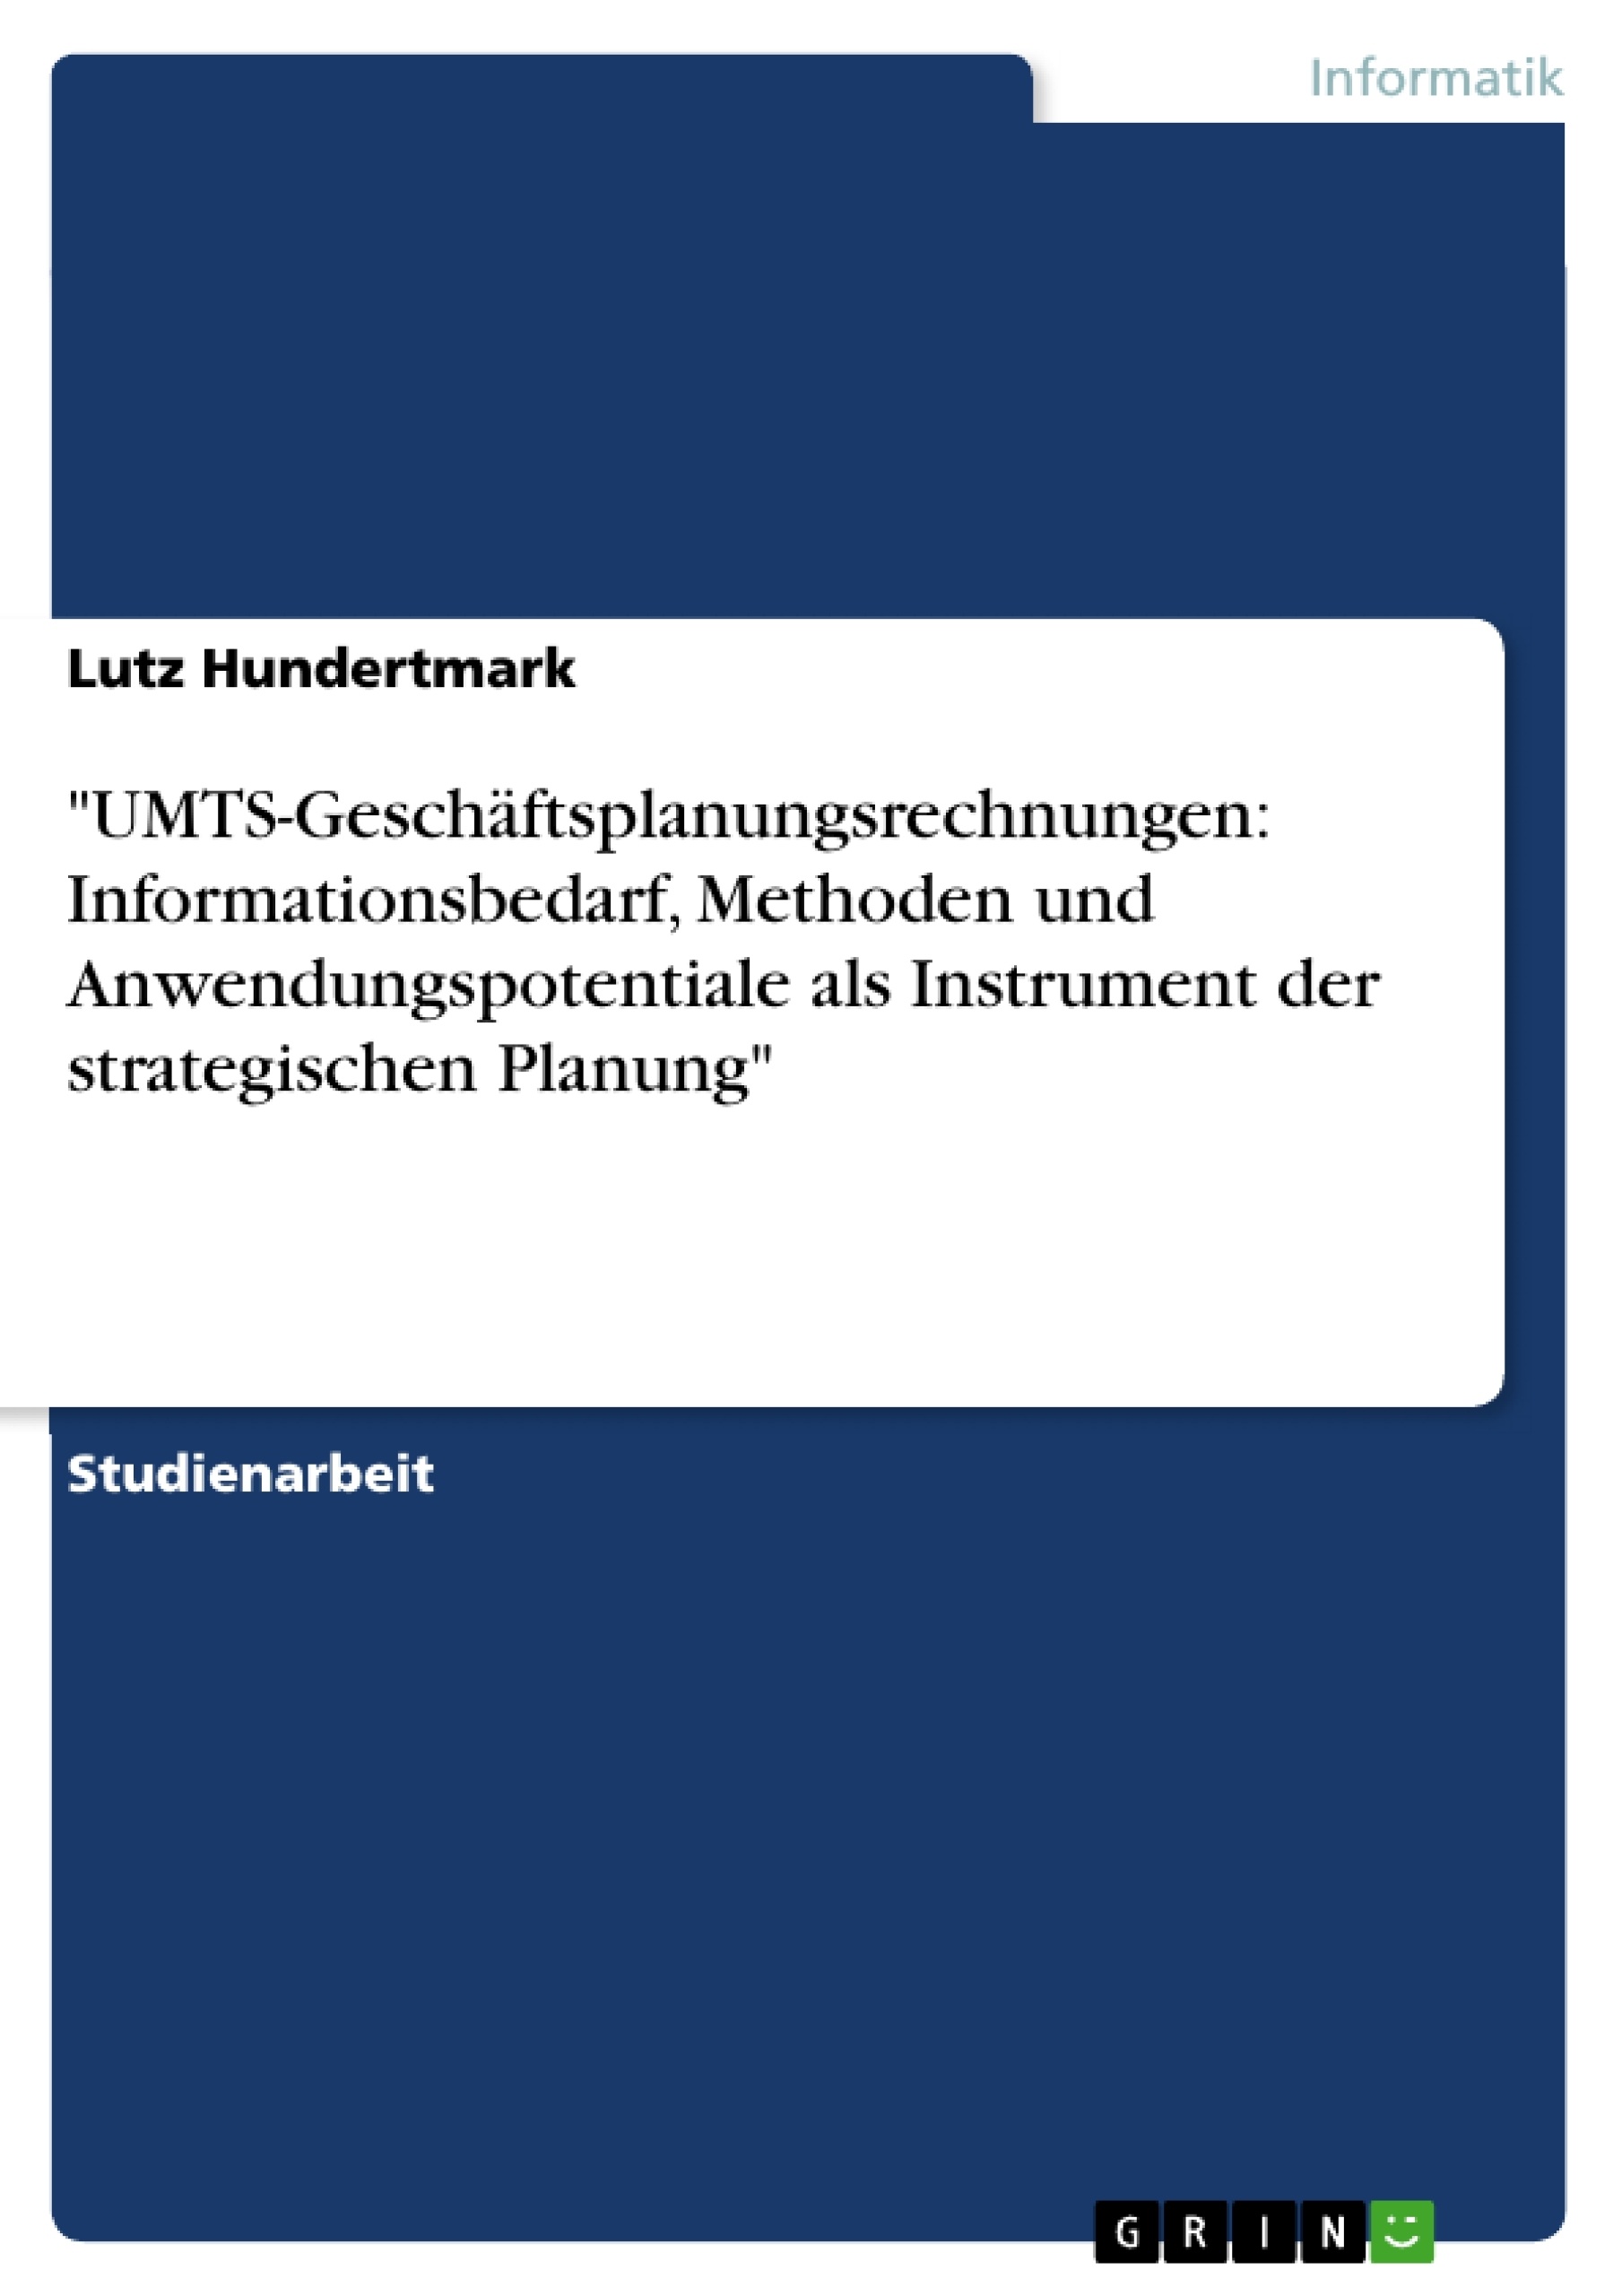 Título: "UMTS-Geschäftsplanungsrechnungen: Informationsbedarf, Methoden und Anwendungspotentiale als Instrument der strategischen Planung"